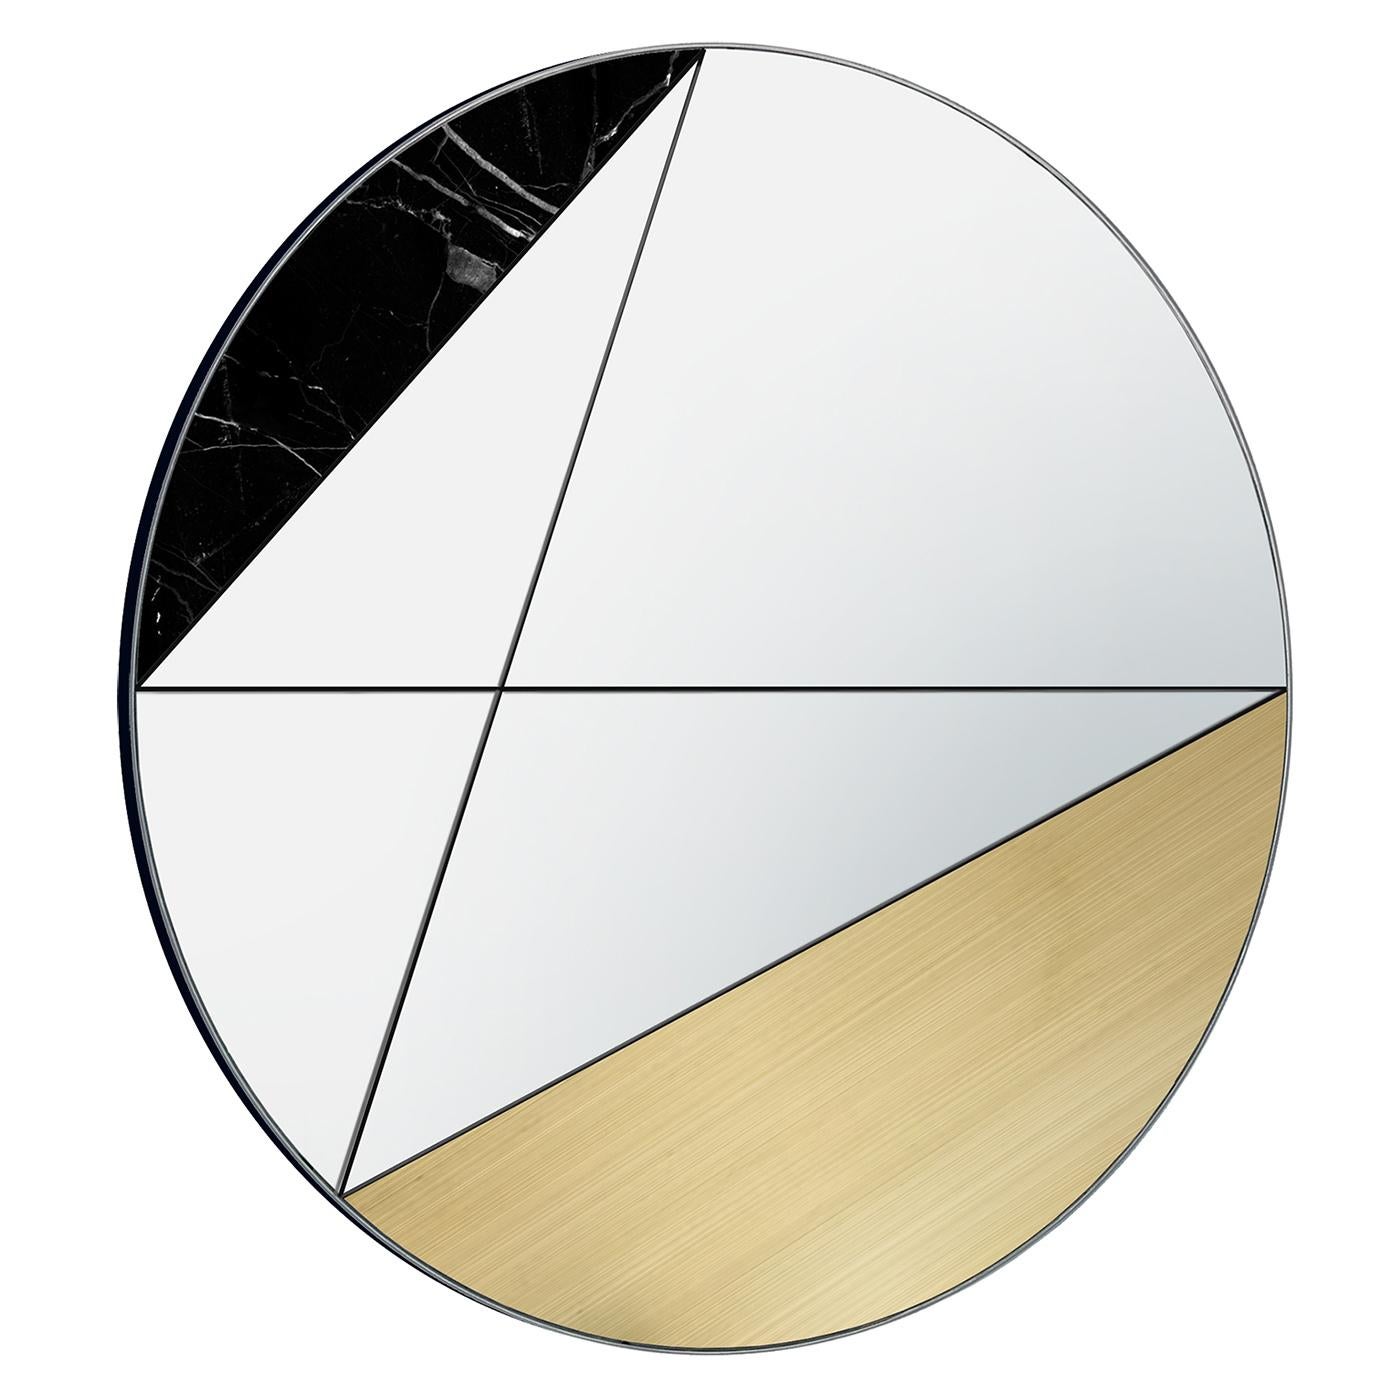 Diese Version des Clepsydra-Spiegels gehört zu einer einzigartigen Kollektion von dekorativen Spiegeln, die ausschließlich von Hand gefertigt werden. Sie besticht durch die Kombination von Marquinia-Marmor und gebürstetem Messing. Mit den